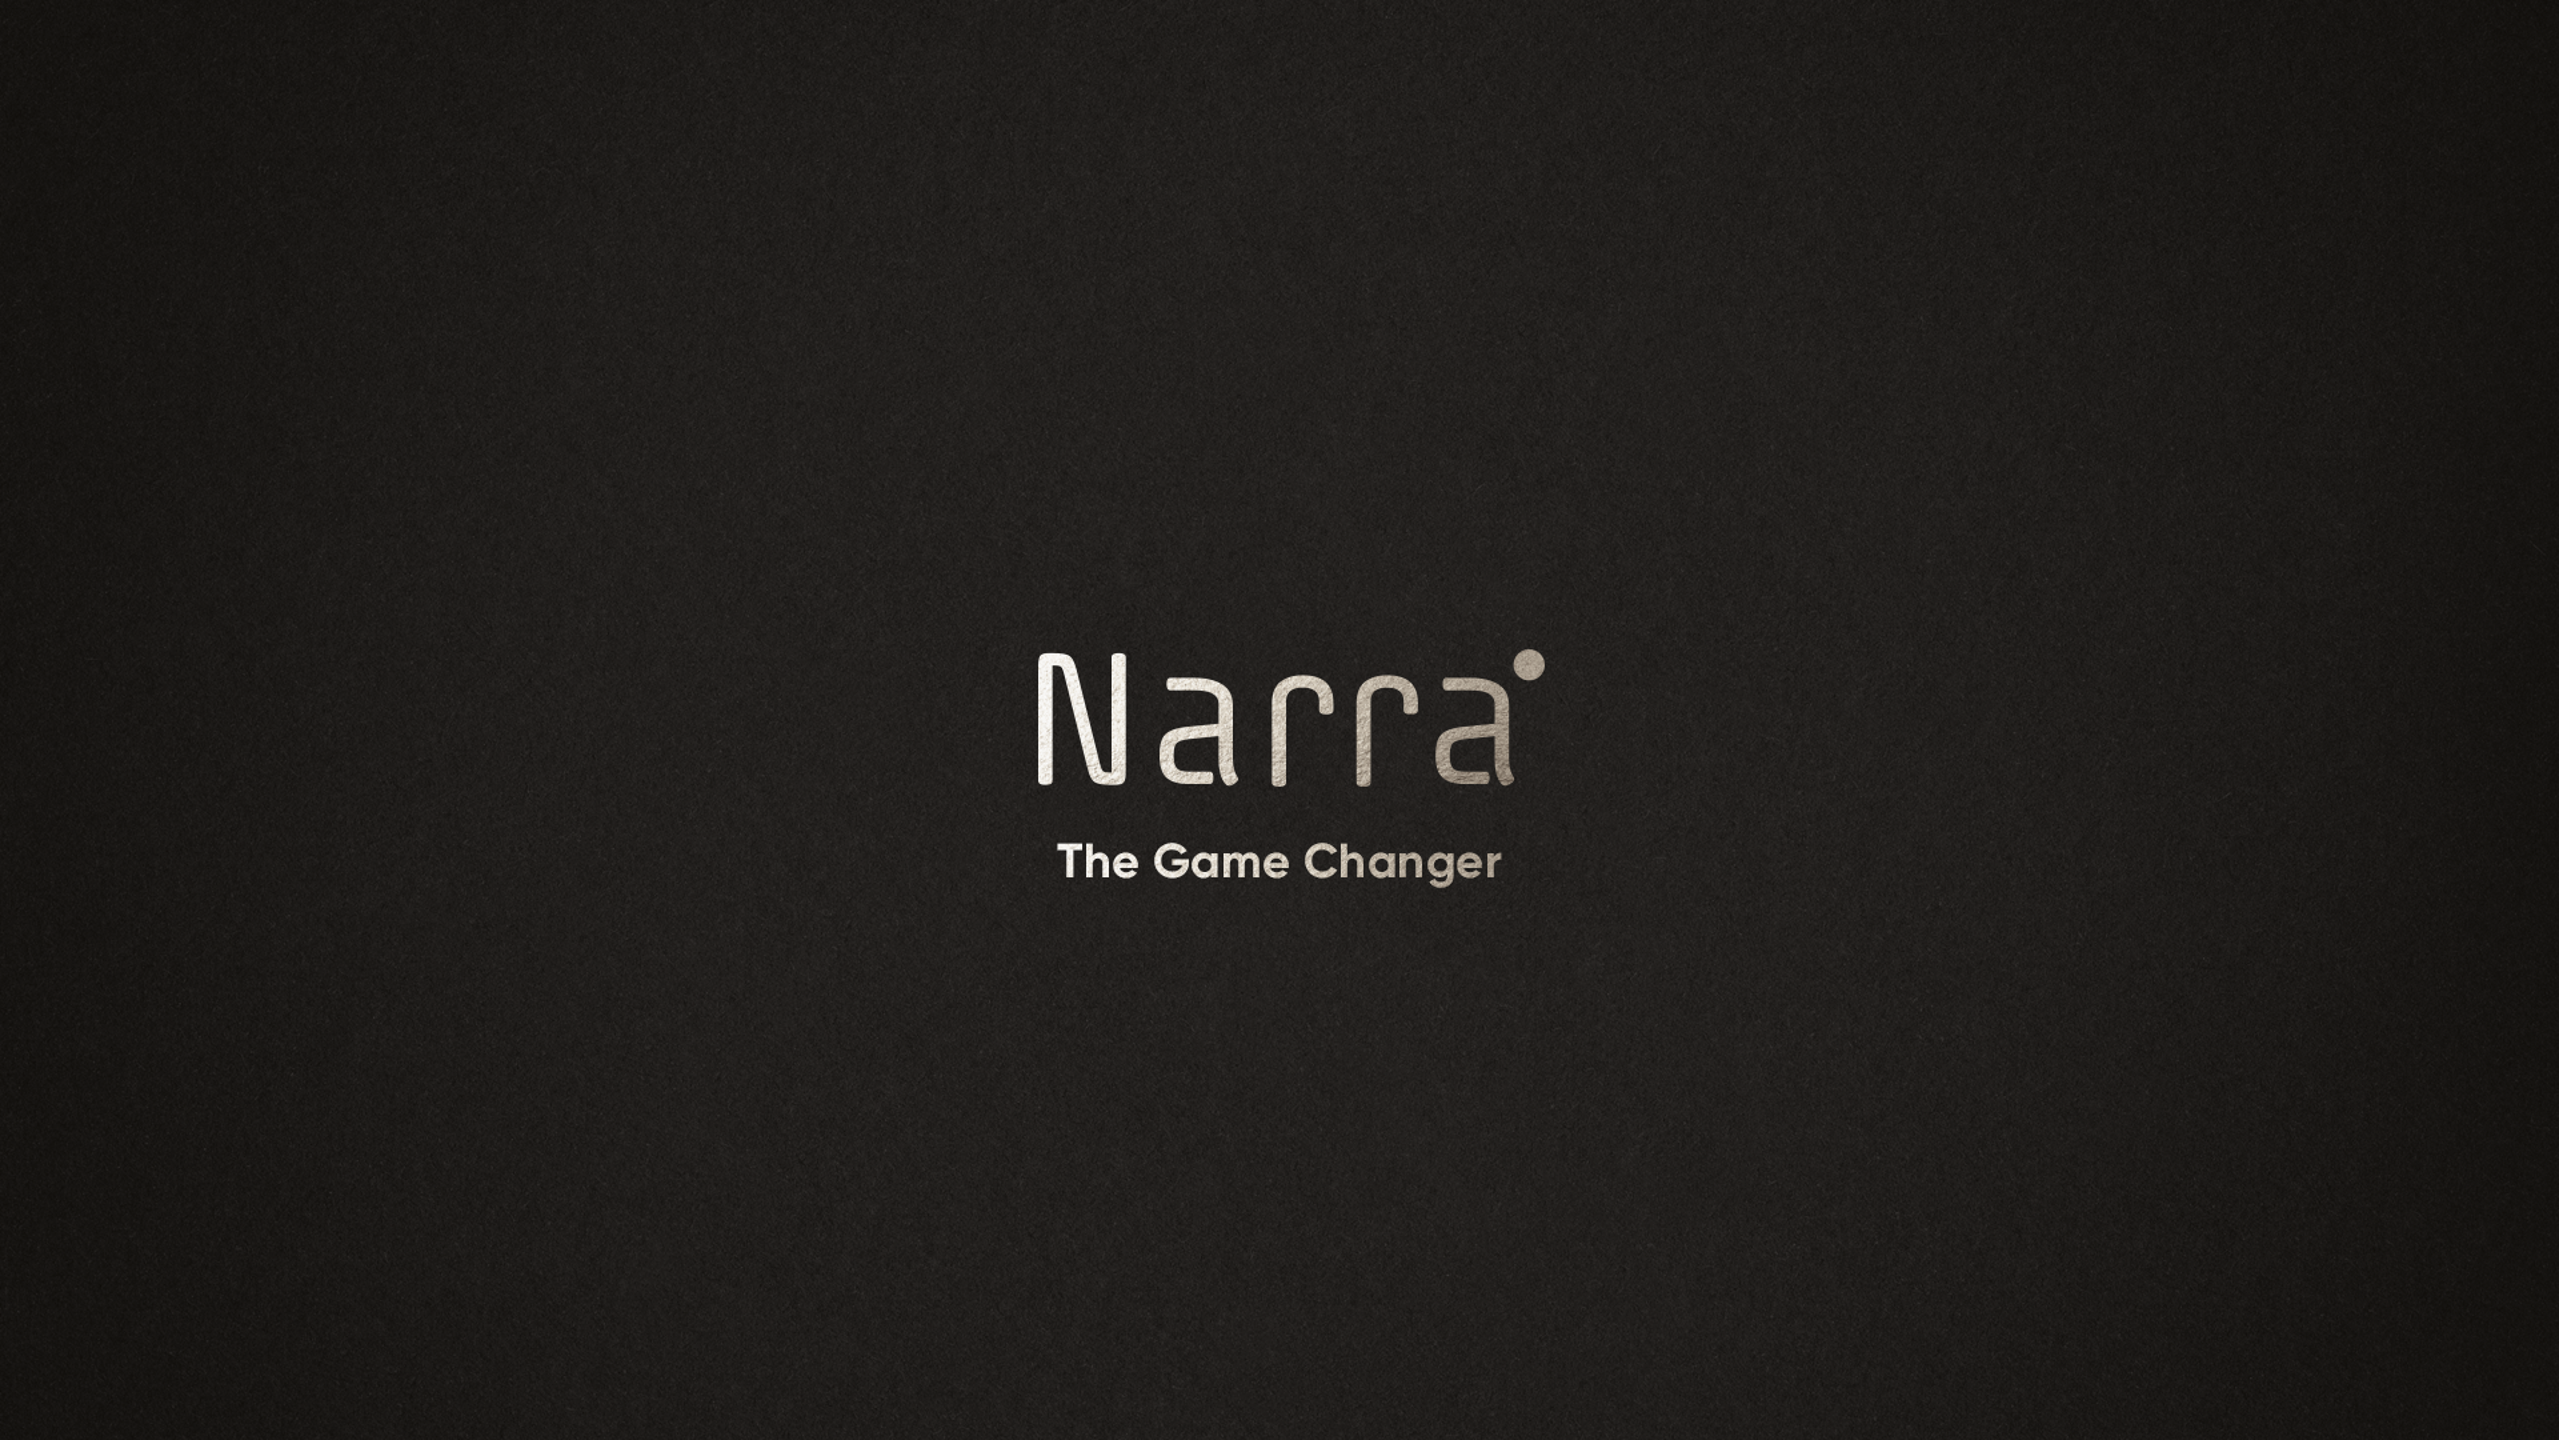 Stwórz własną historię z wykorzystaniem Narra – Warsztaty dla narrative designerów i designerek